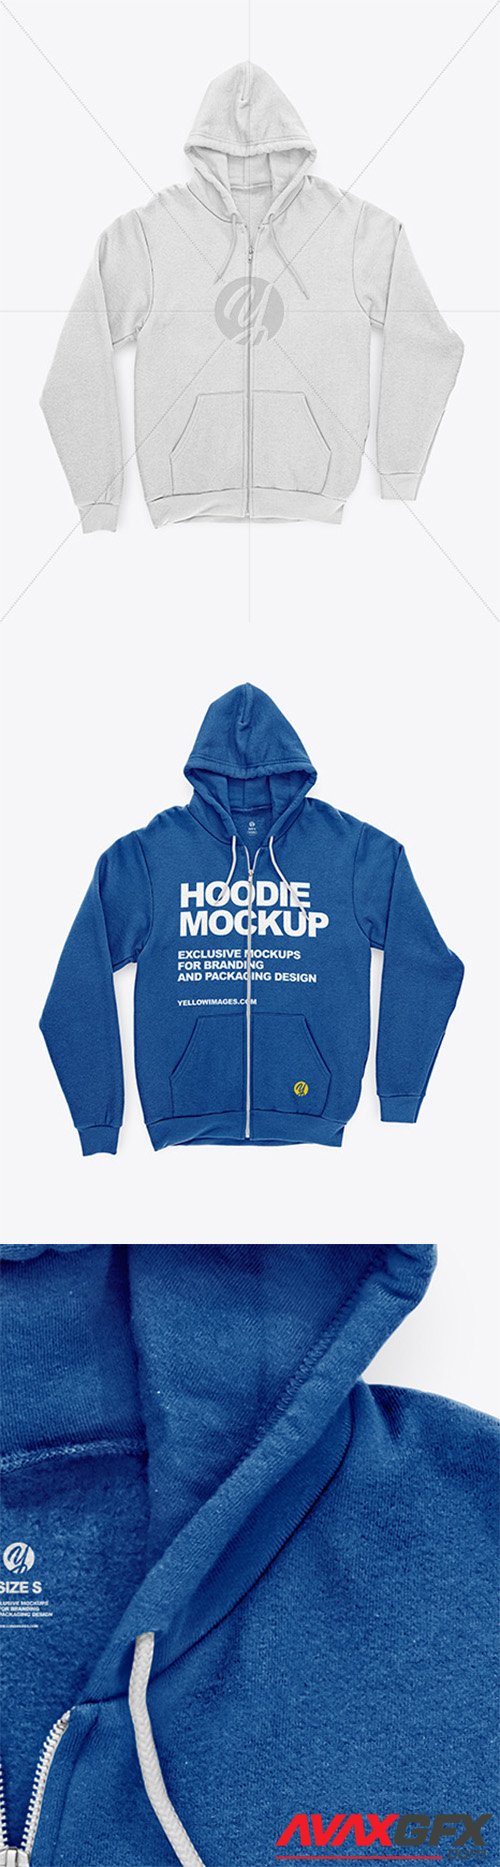 Full-Zip Hoodie Mockup 61295